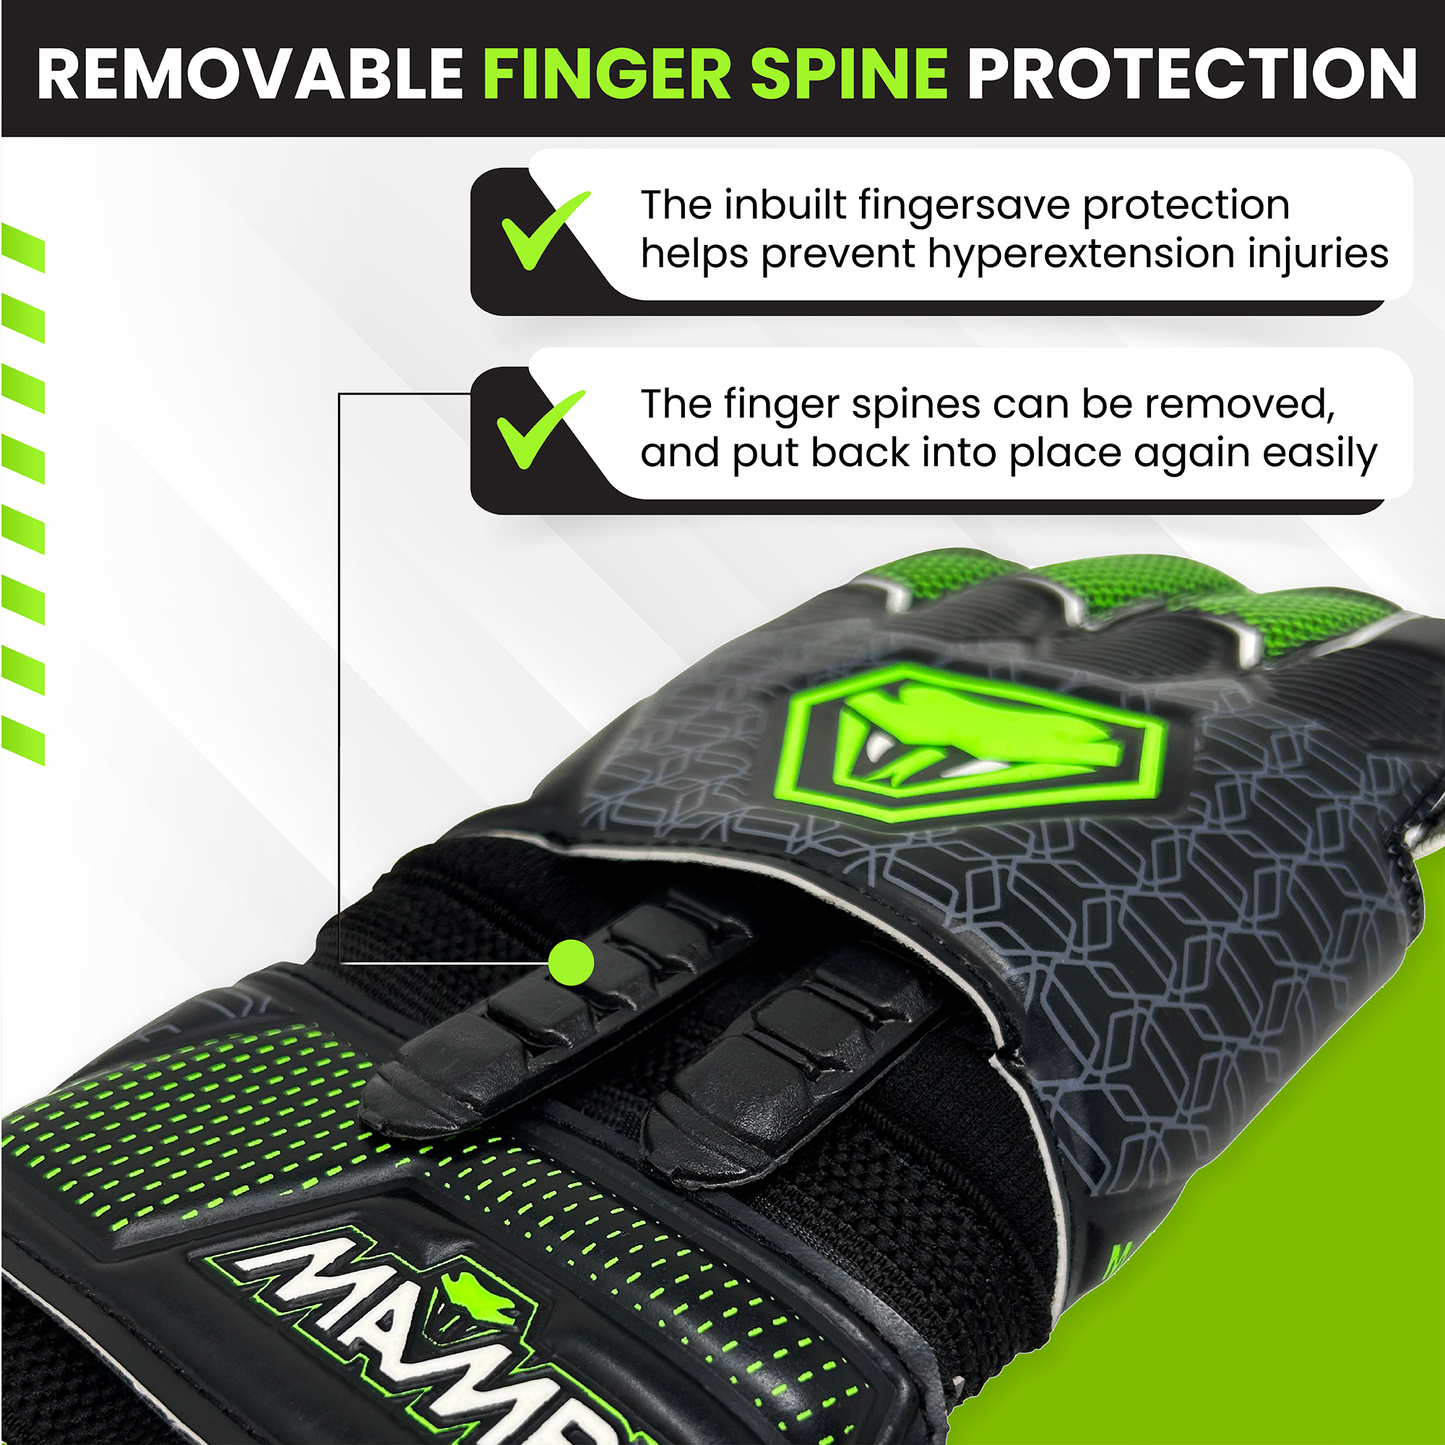 Goalkeeper gloves removable fingerspine protection